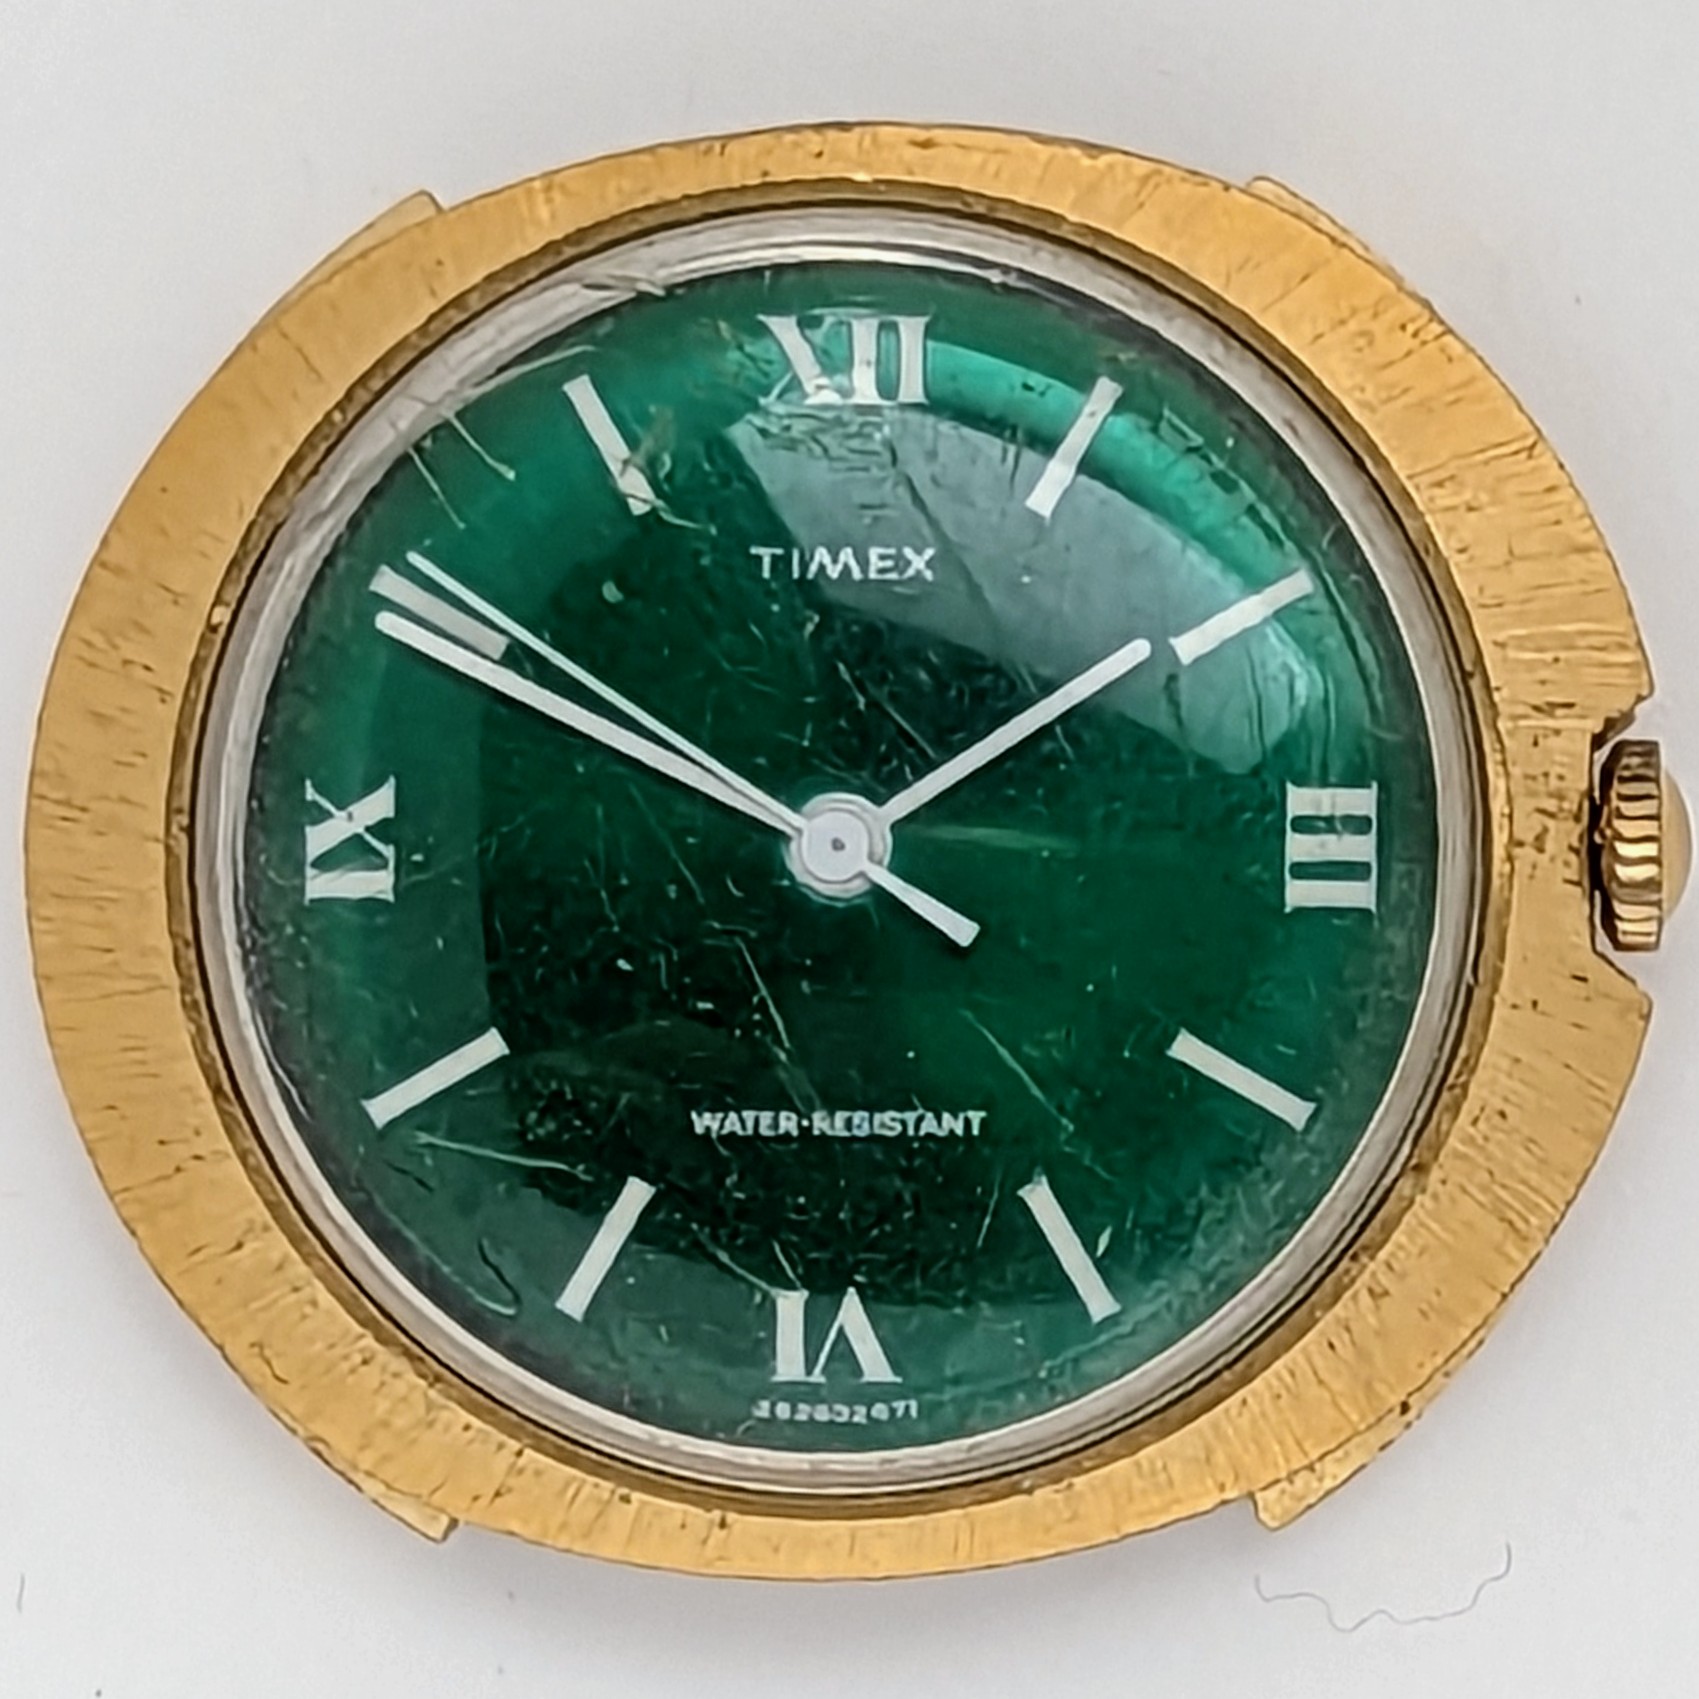 Timex Marlin 26263 2471 [1971]